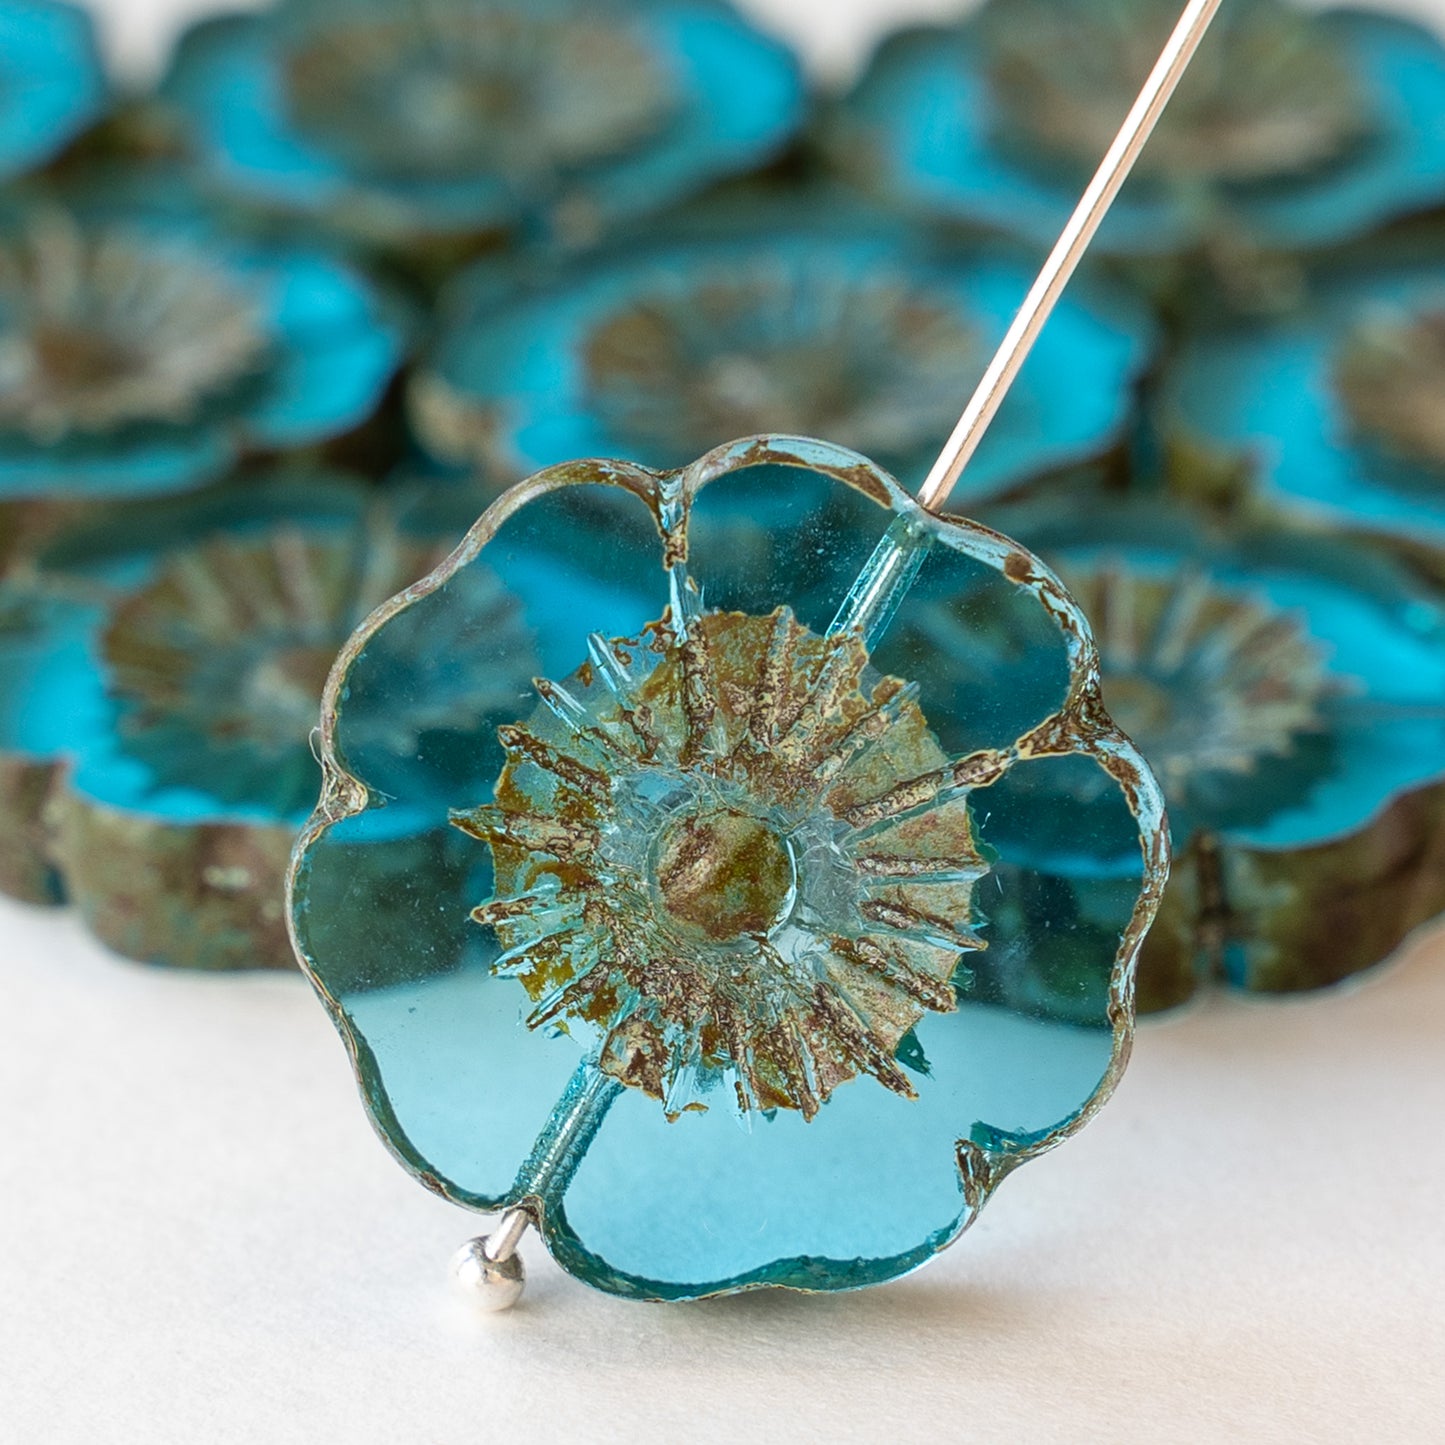 22mm Flower Beads - Transparent Aqua Blue - 2 or 6 beads